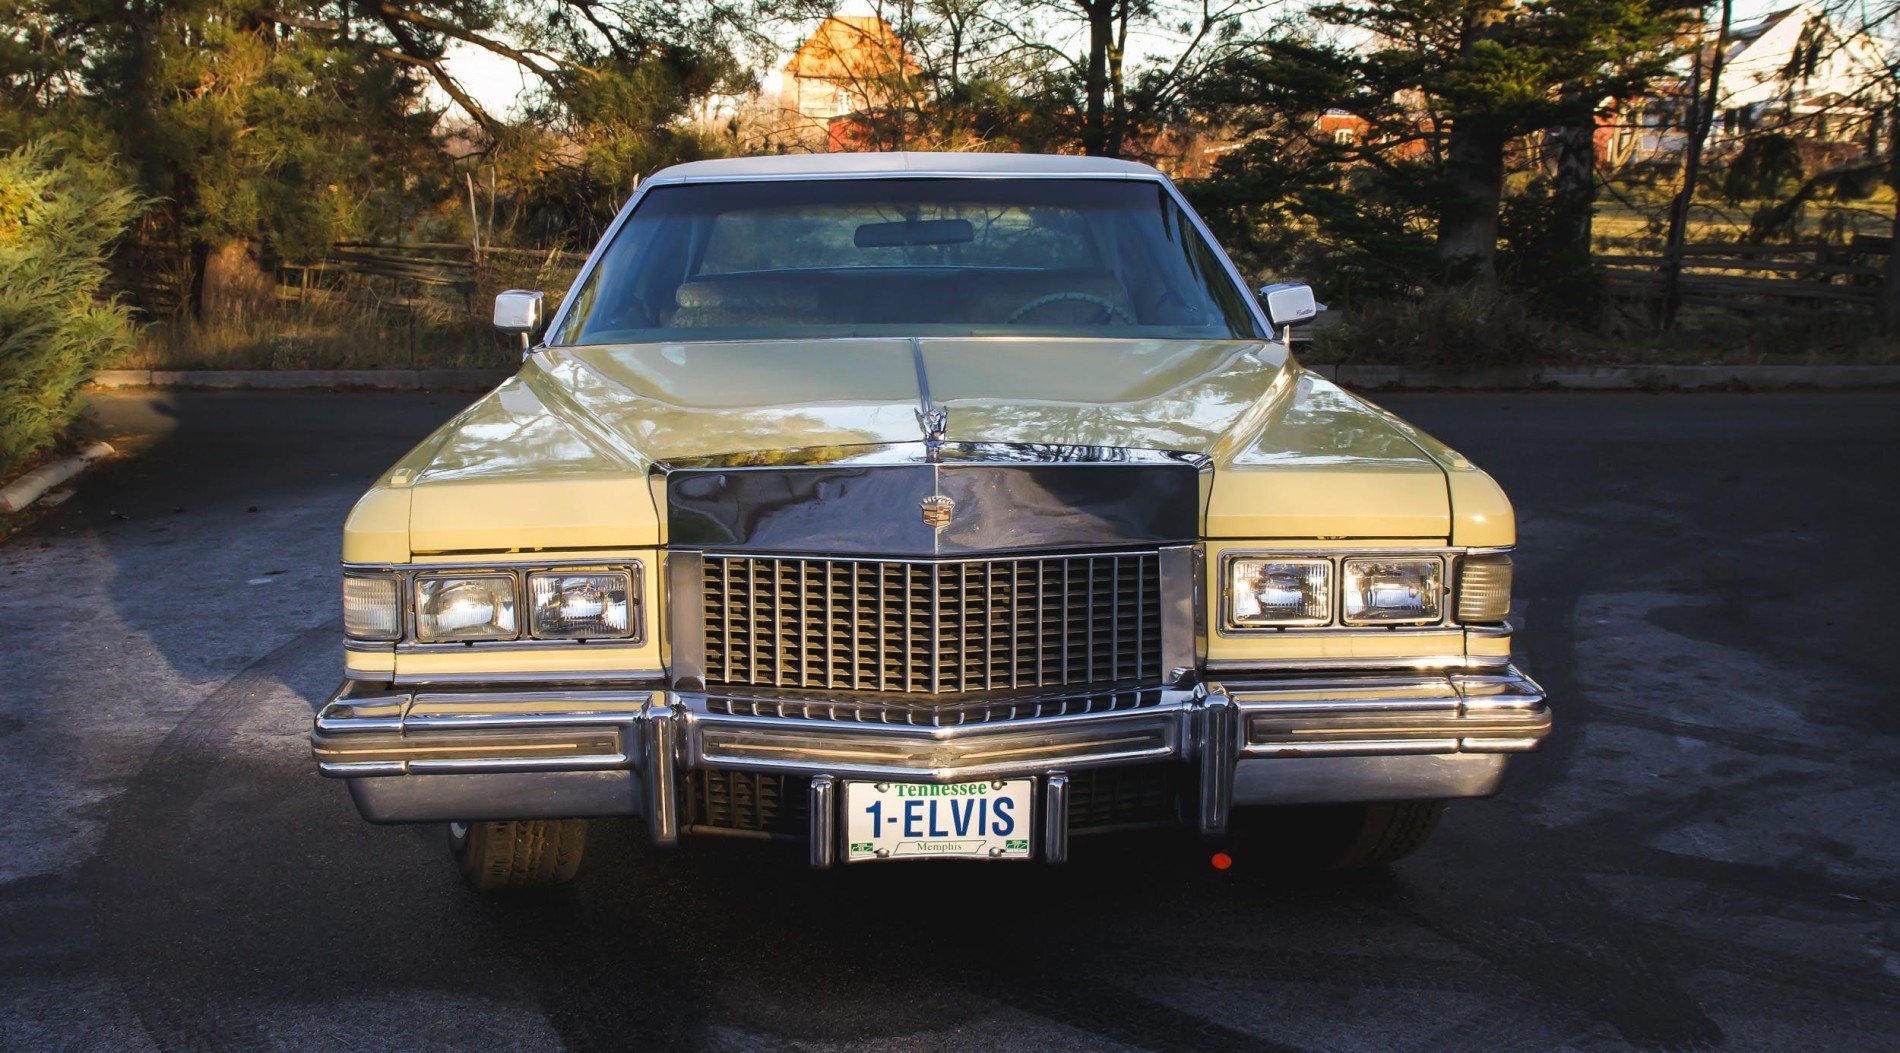  Vechea mașină a lui Elvis, Cadillac Fleetwood, scoasă la vânzare pe internet